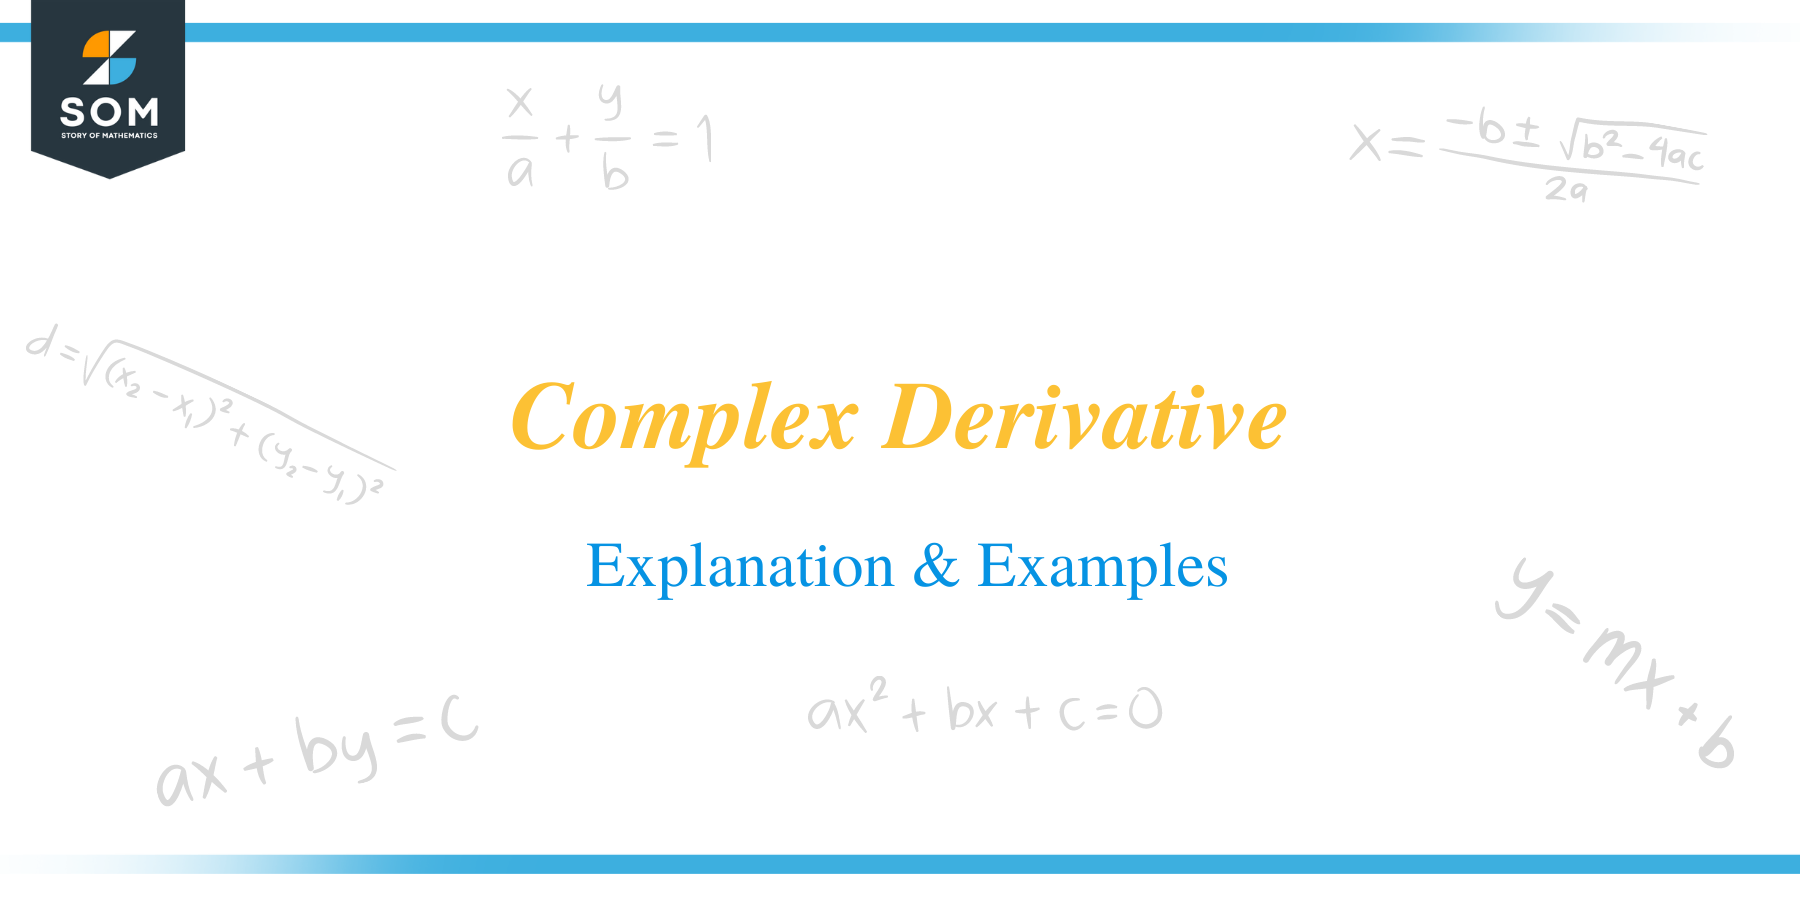 Complex derivative